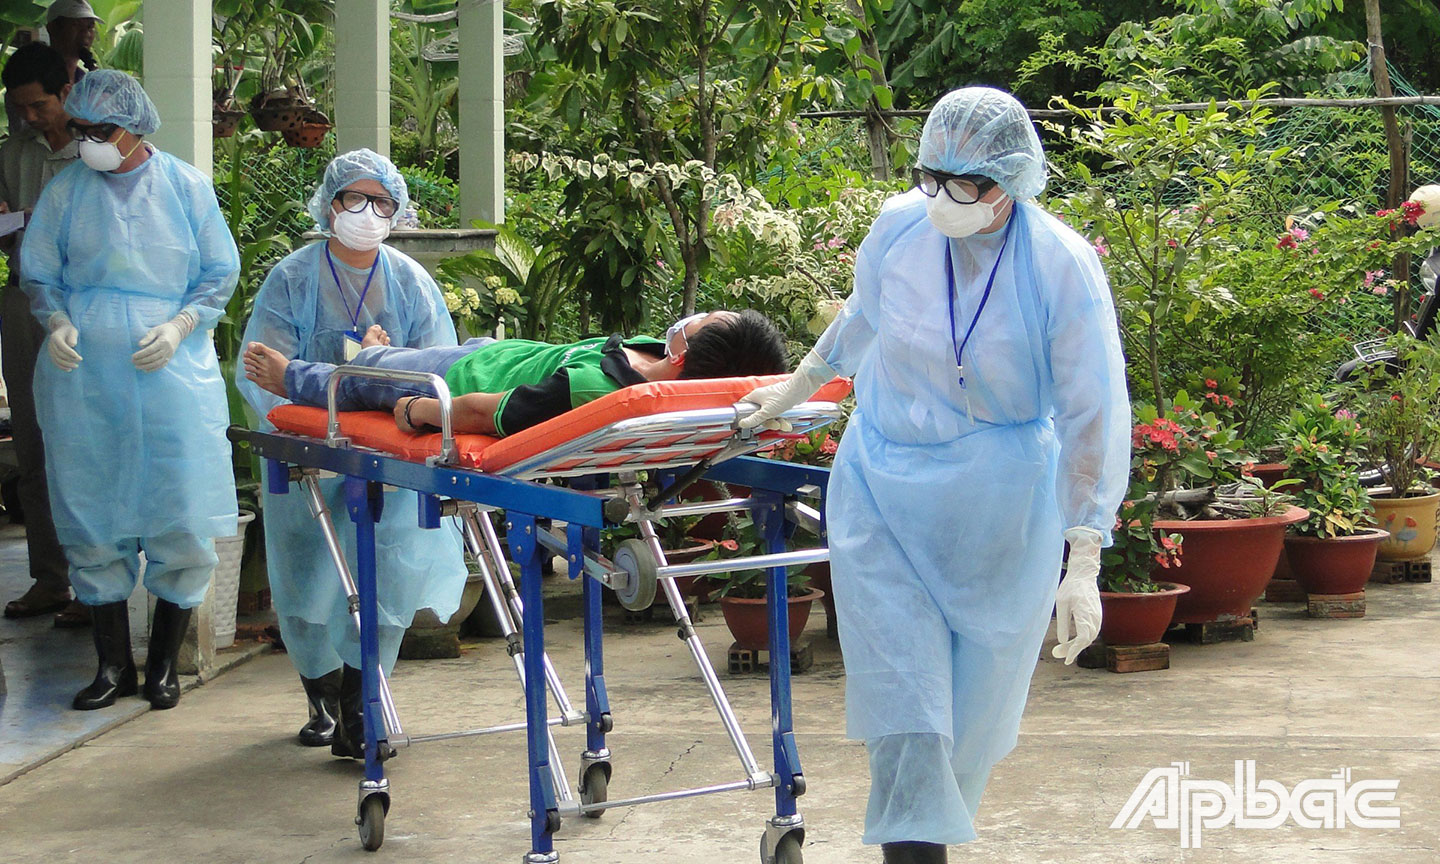 Ngành Y tế diễn tập phòng, chống dịch cúm gia cầm lây sang người tại thị xã Gò Công năm 2013(di chuyển người bệnh nghi nhiểm cúm gia cầm ra khỏi nhà)